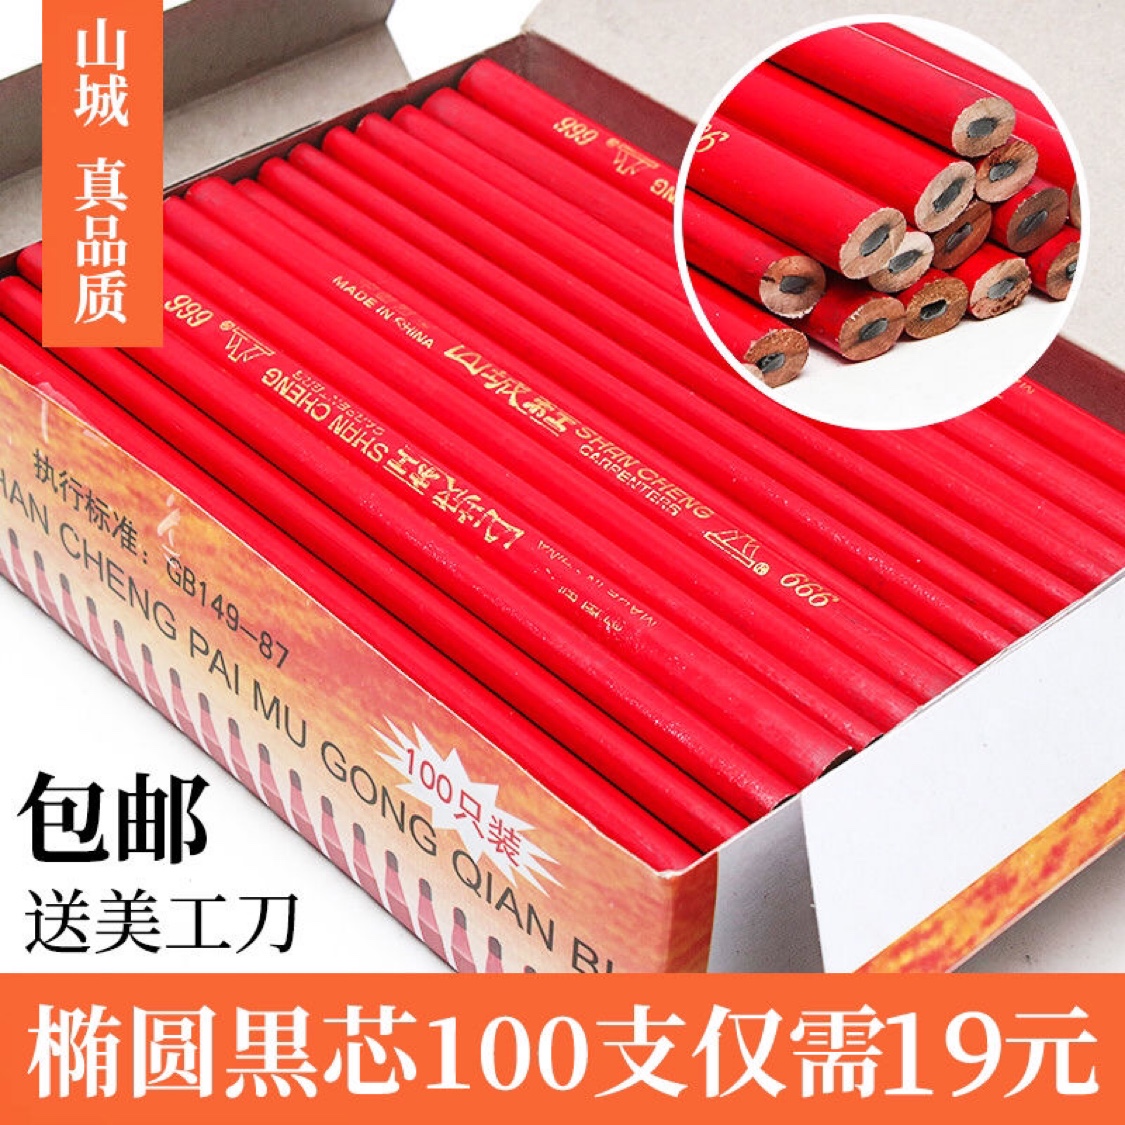 山城木工铅笔 全红铅笔 八角粗芯铅笔 木工划线笔  六角红蓝铅笔